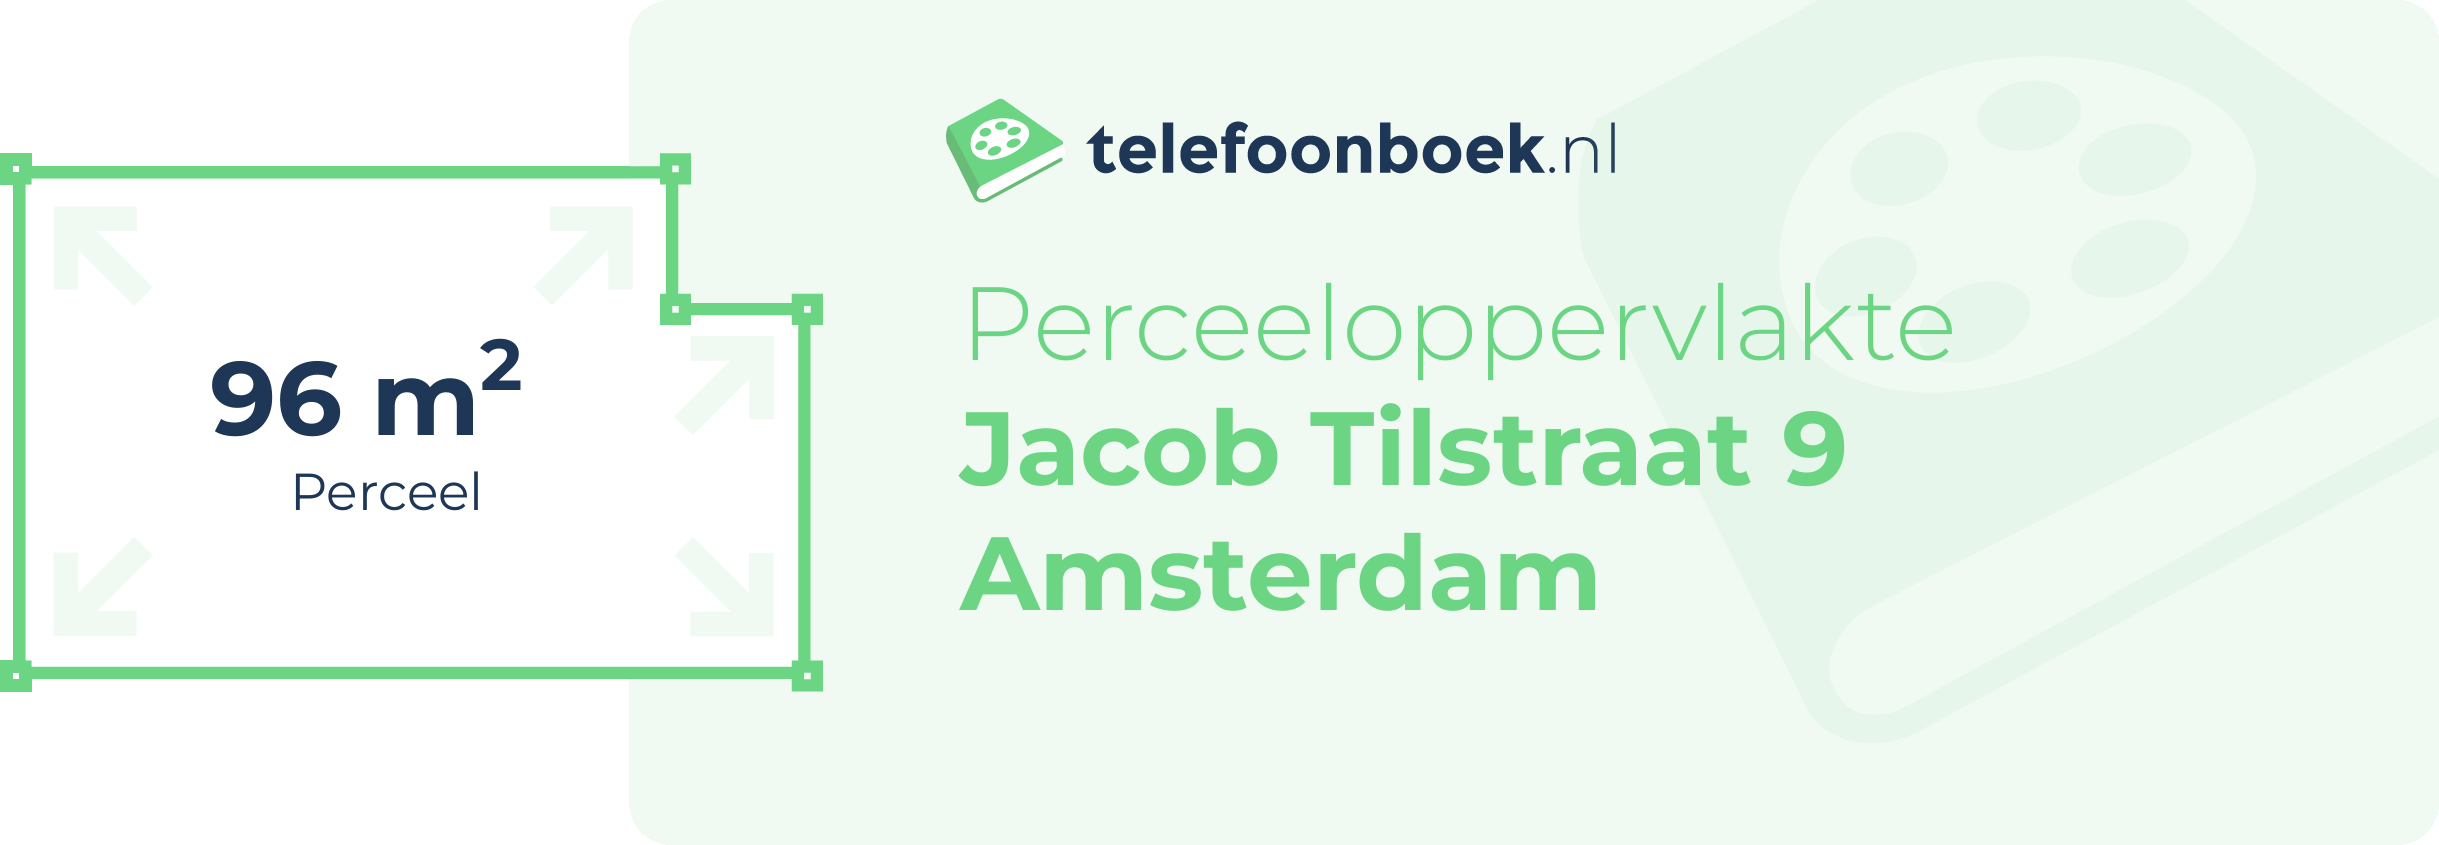 Perceeloppervlakte Jacob Tilstraat 9 Amsterdam